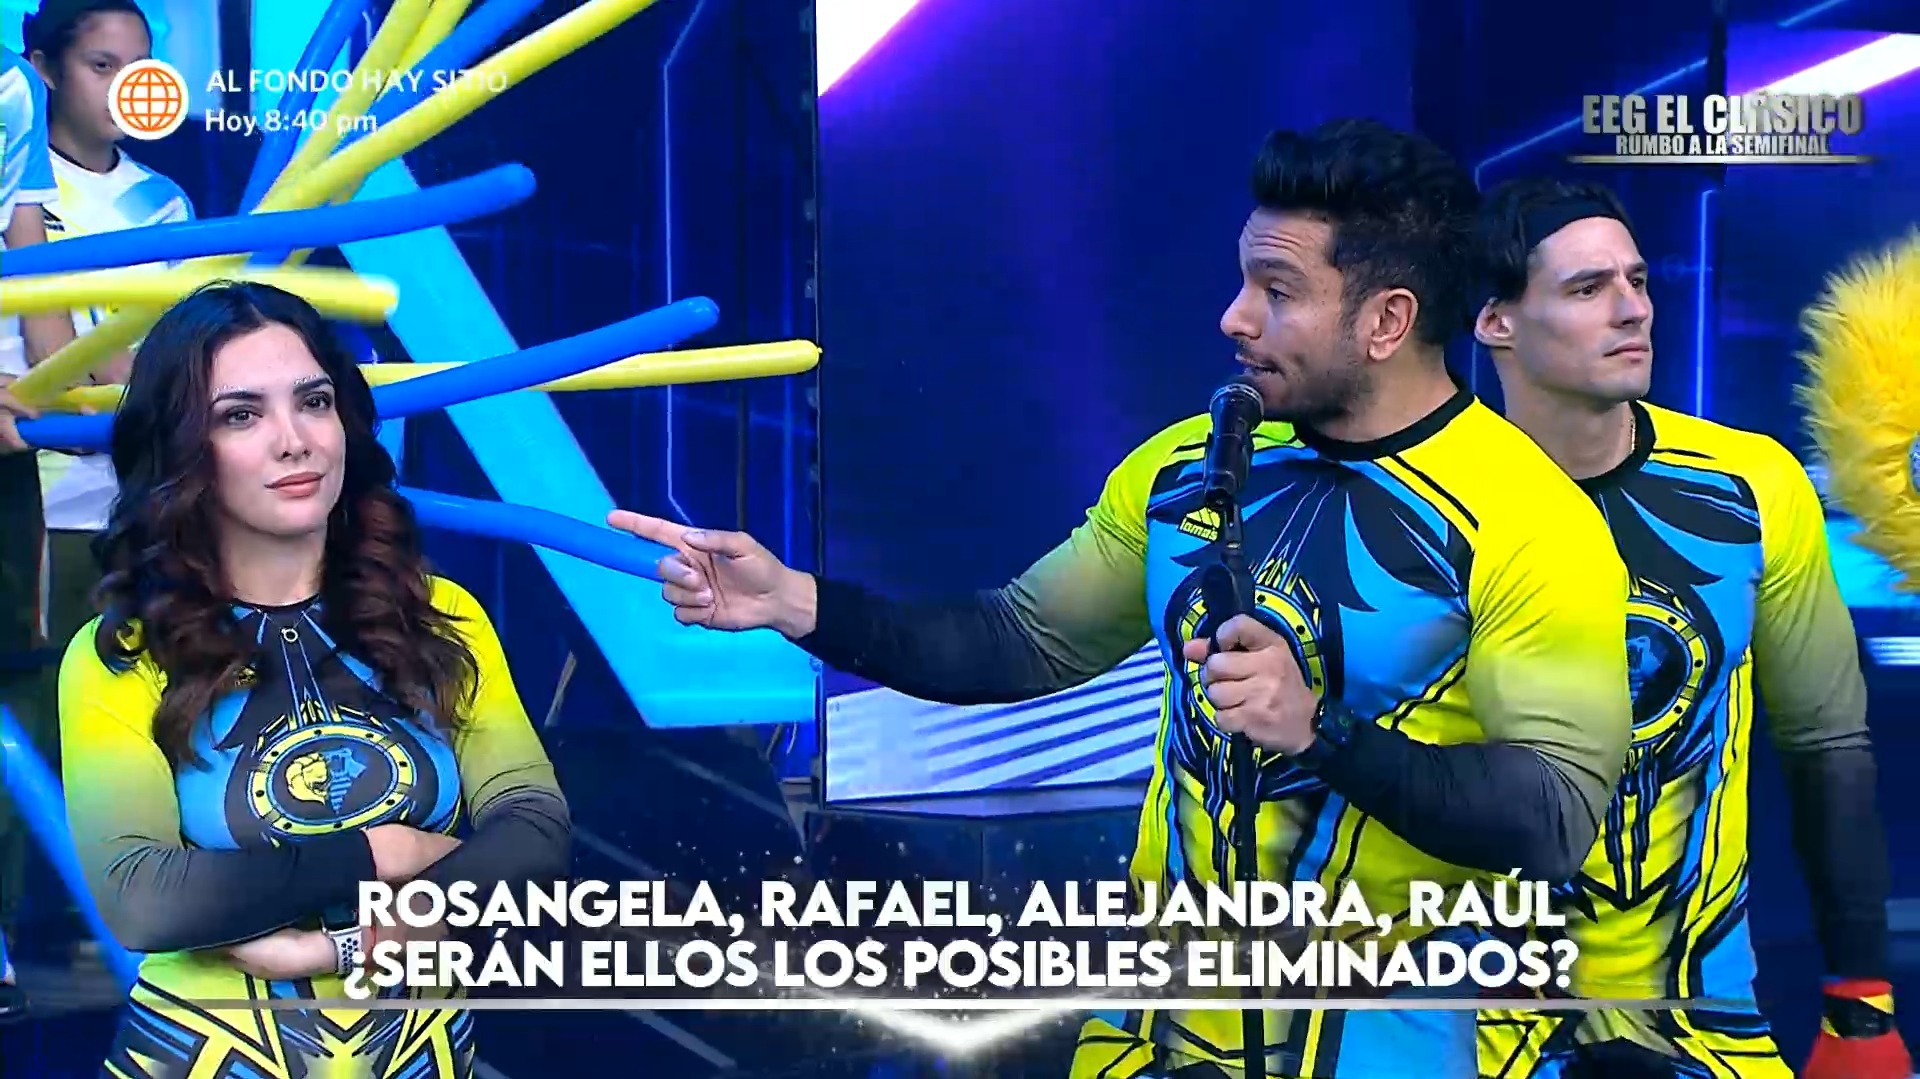 Rosángela Espinoza rompió en llanto tras broma de Rafael Cardozo sobre su lesión